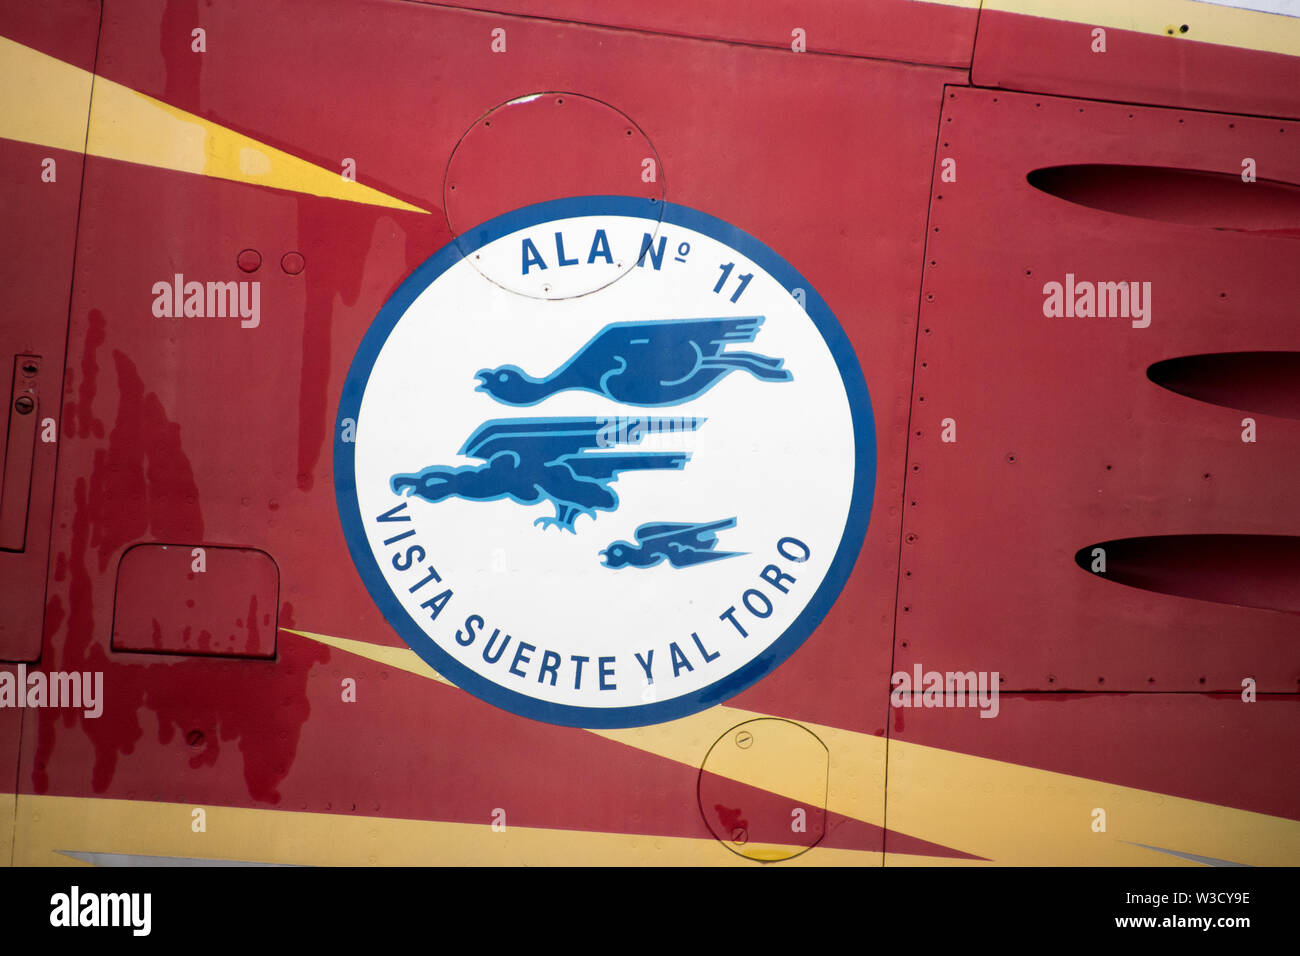 Ala 11, un escadron de chasse espagnol, actuellement situé à la base aérienne de Moron, Espagne. (Traduction : avec de la chance et le taureau) Banque D'Images